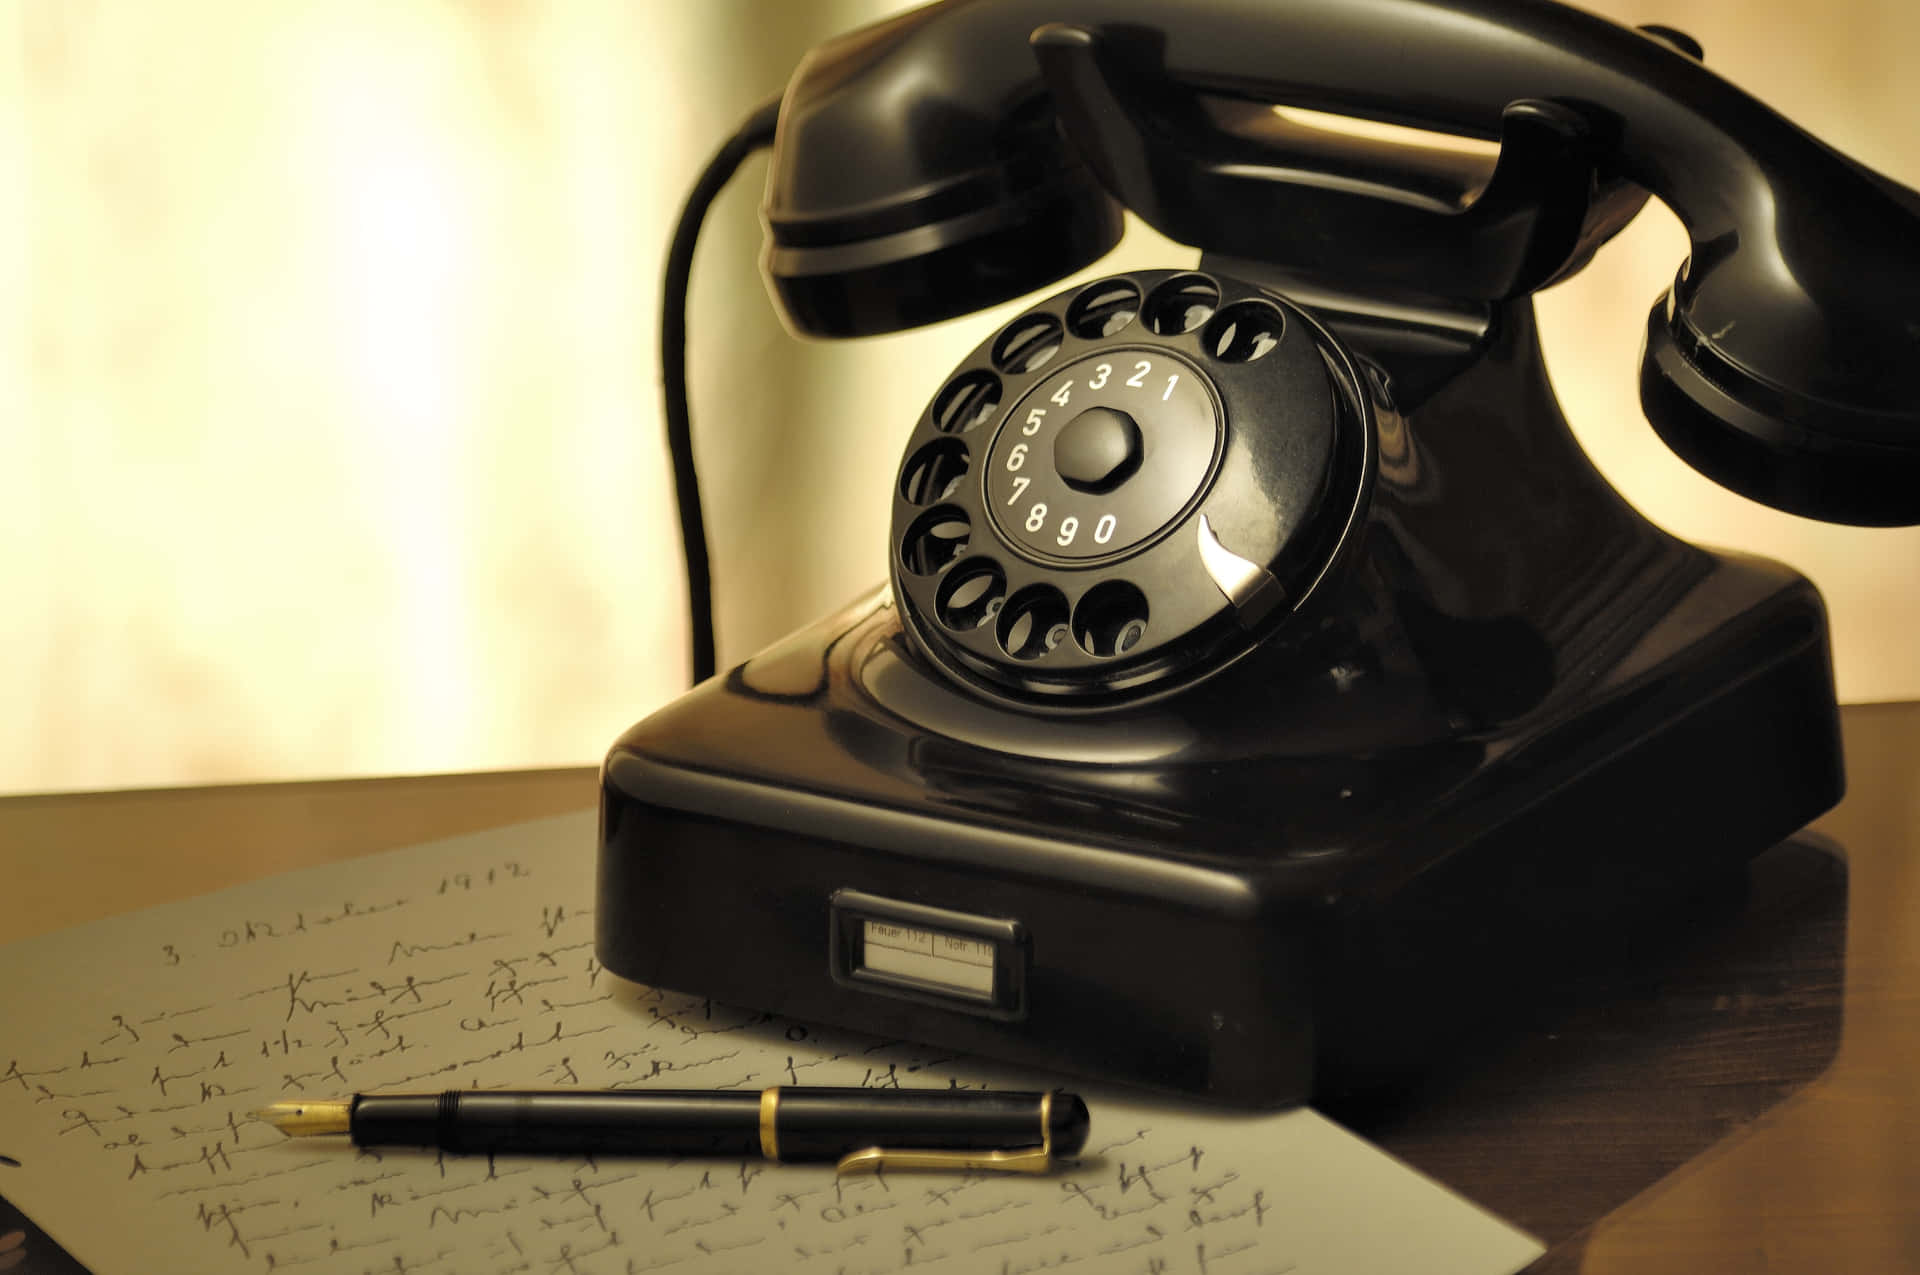 Vintage Telephoneand Penon Desk.jpg Wallpaper